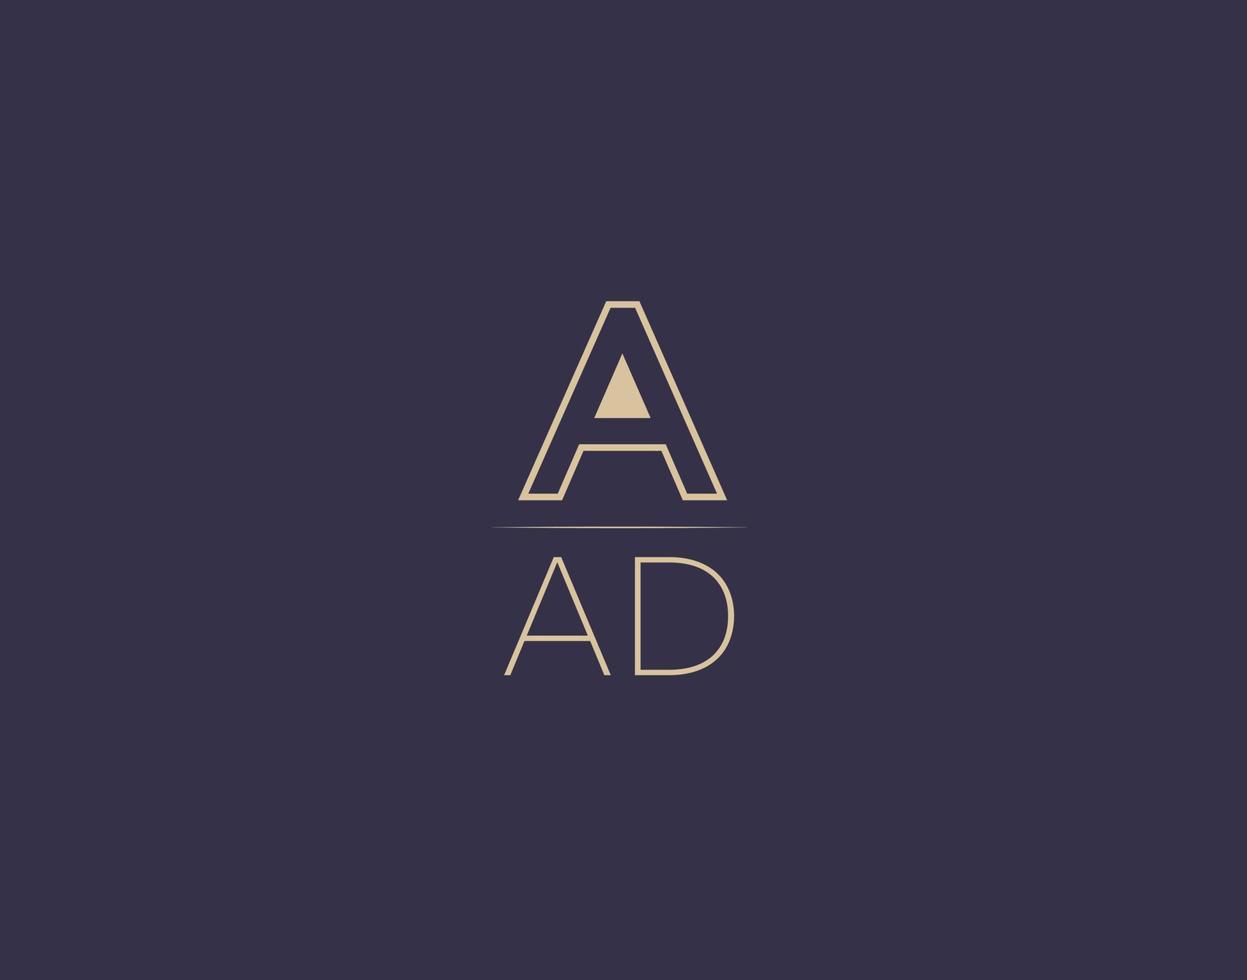 aad brief logo ontwerp modern minimalistische vector afbeeldingen